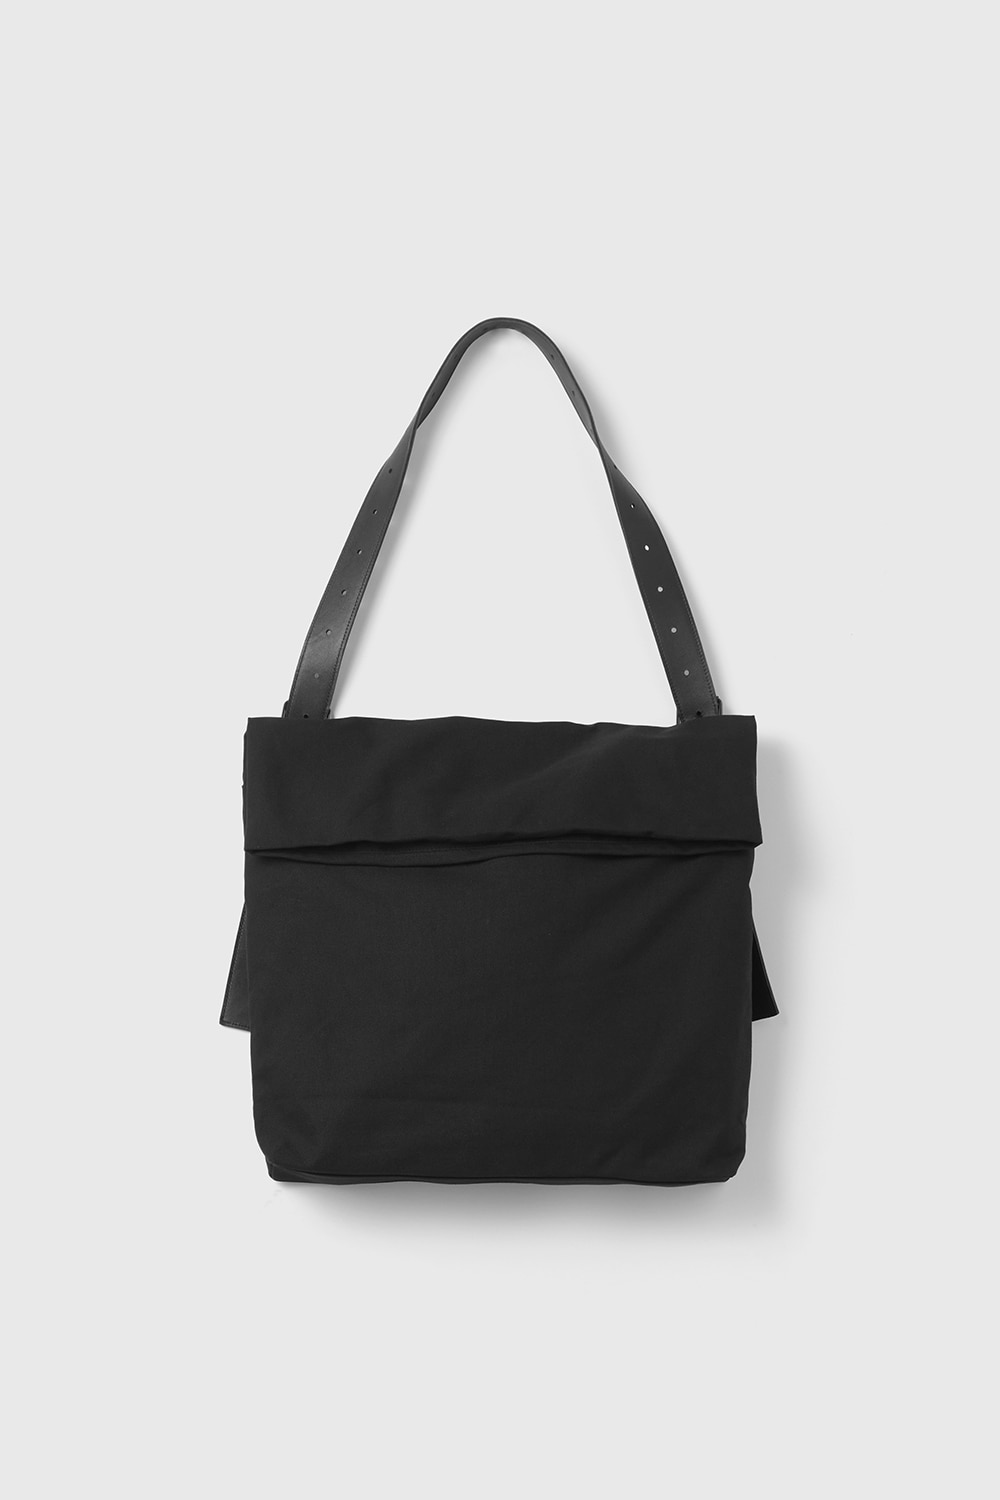 Folding Bag Black